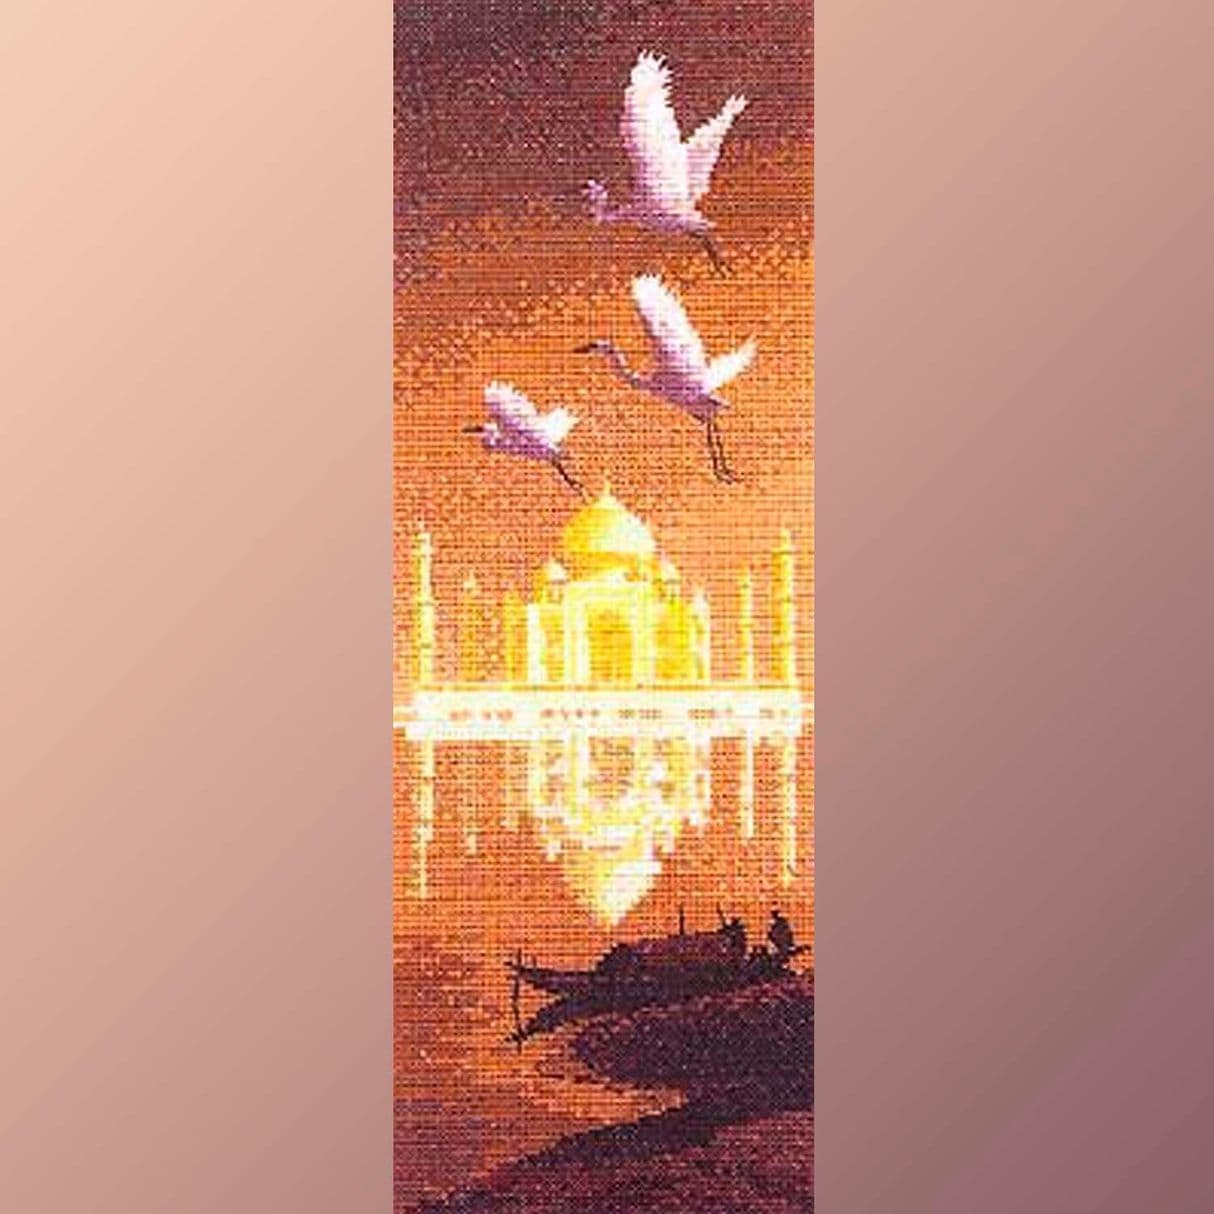 вышивка крестом пейзаж панорама панель Клейтона